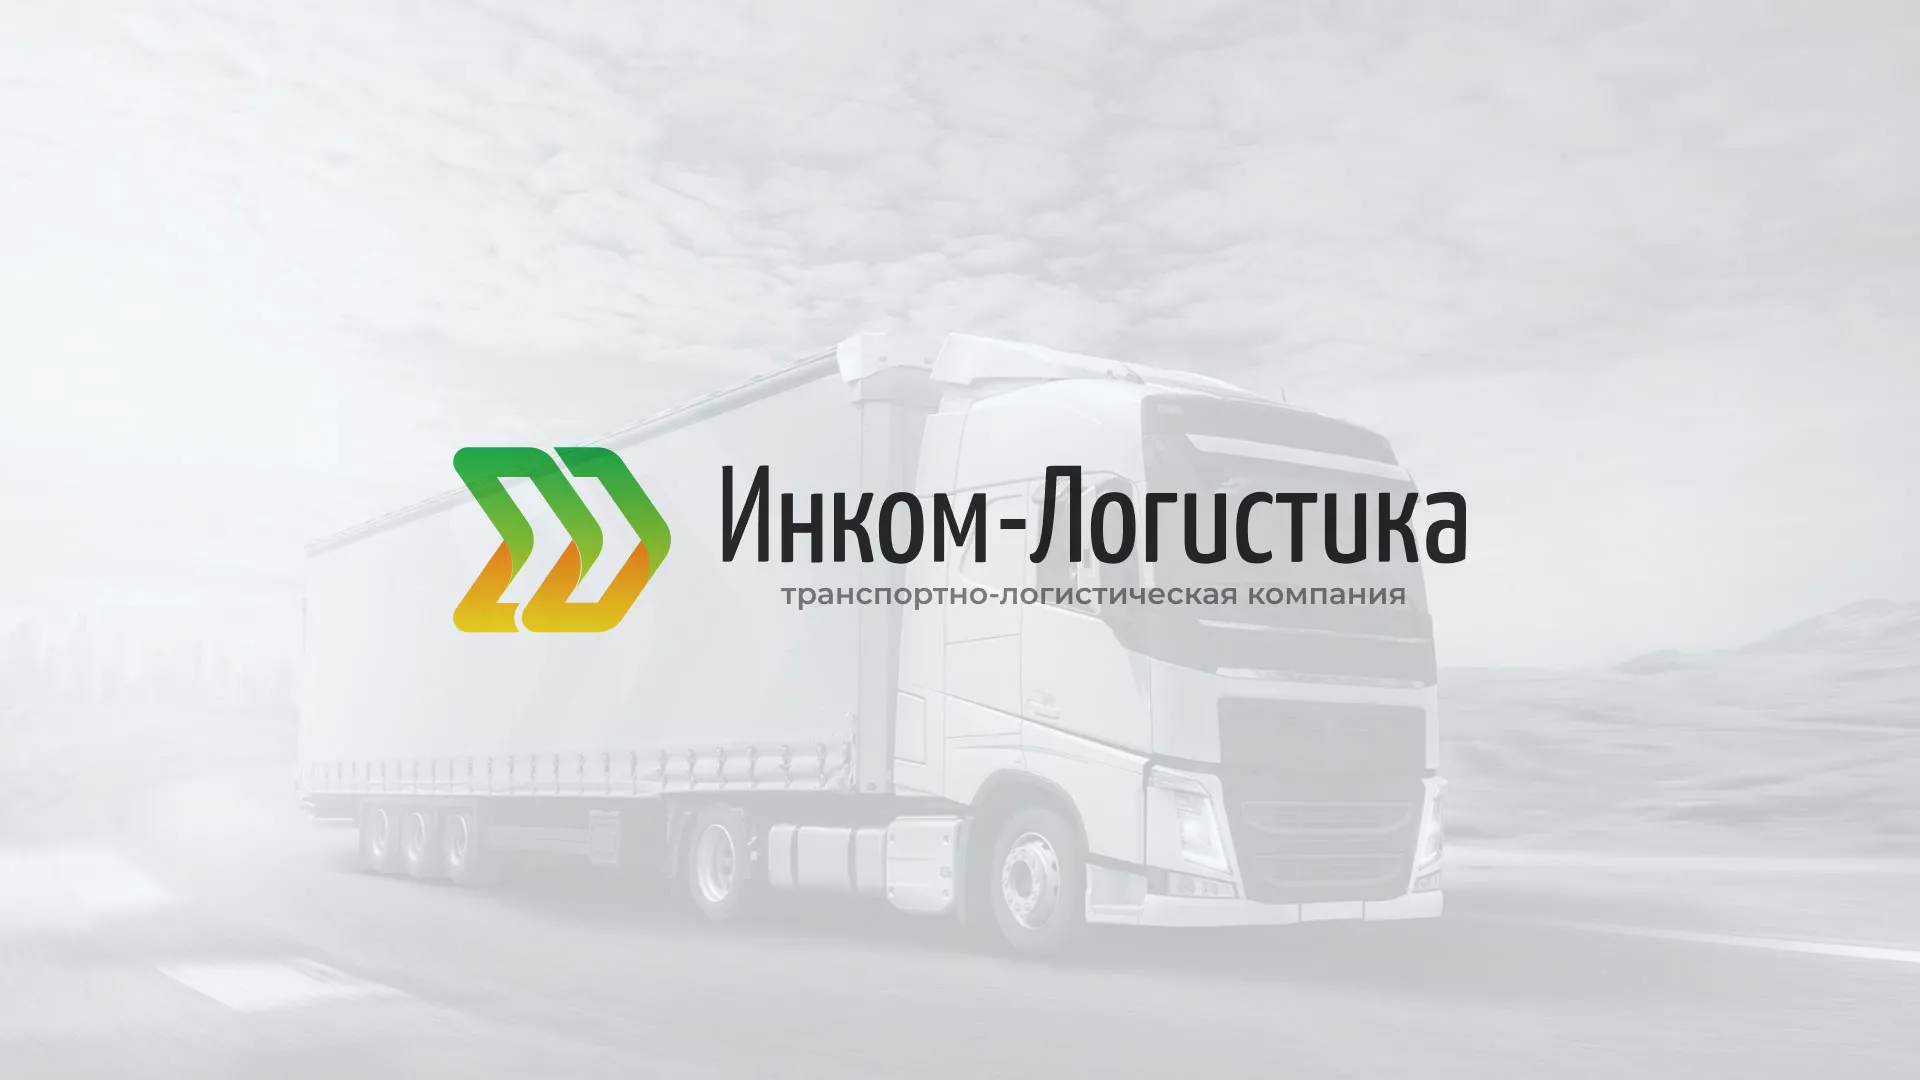 Разработка логотипа и сайта компании «Инком-Логистика» в Грязовце